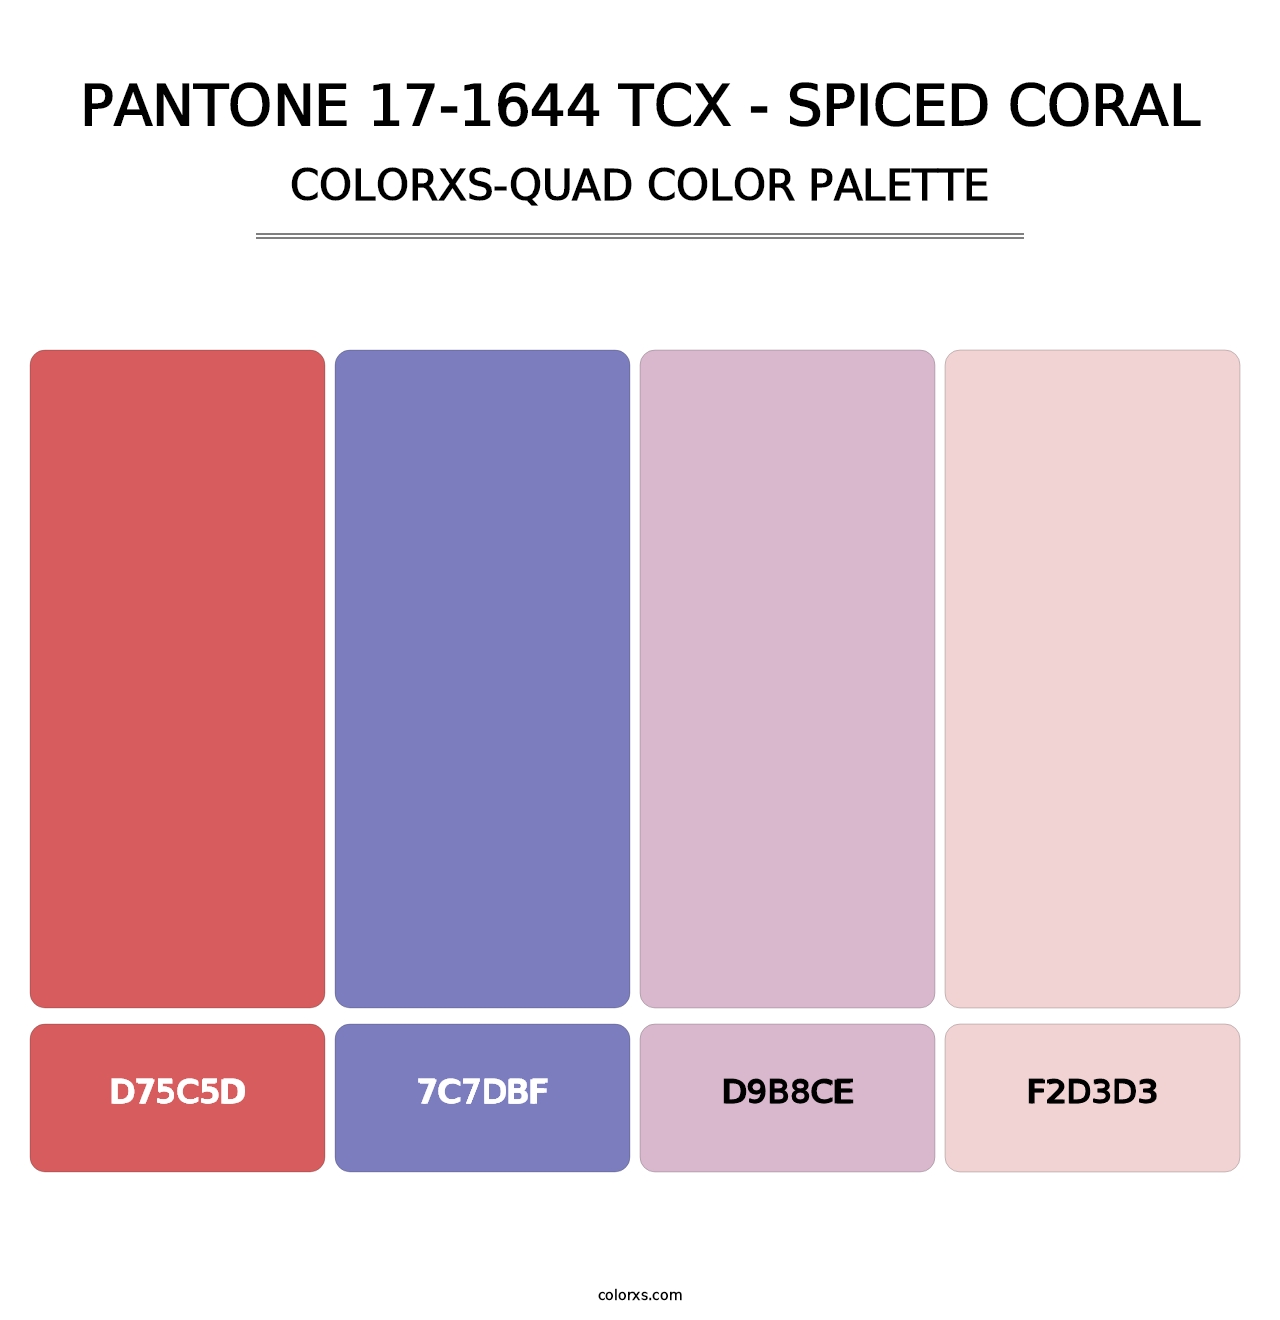 PANTONE 17-1644 TCX - Spiced Coral - Colorxs Quad Palette